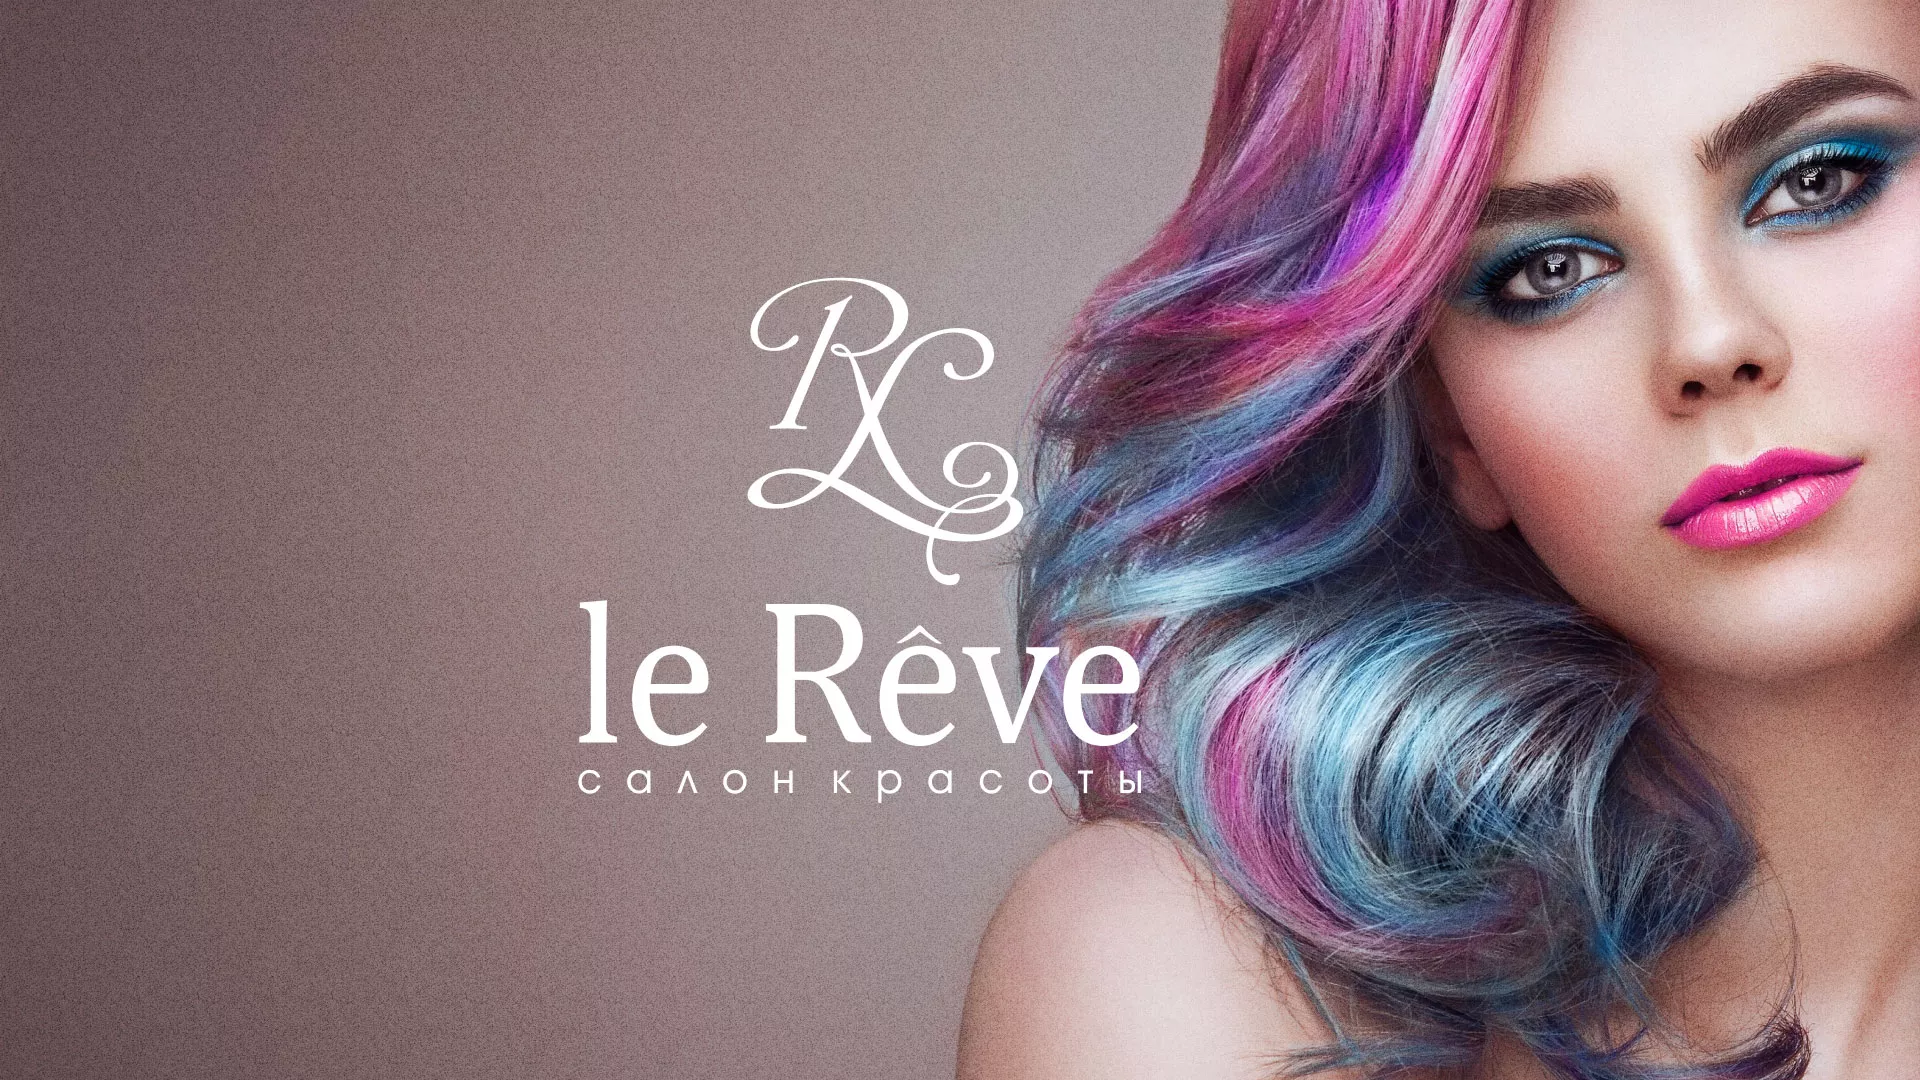 Создание сайта для салона красоты «Le Reve» в Воркуте